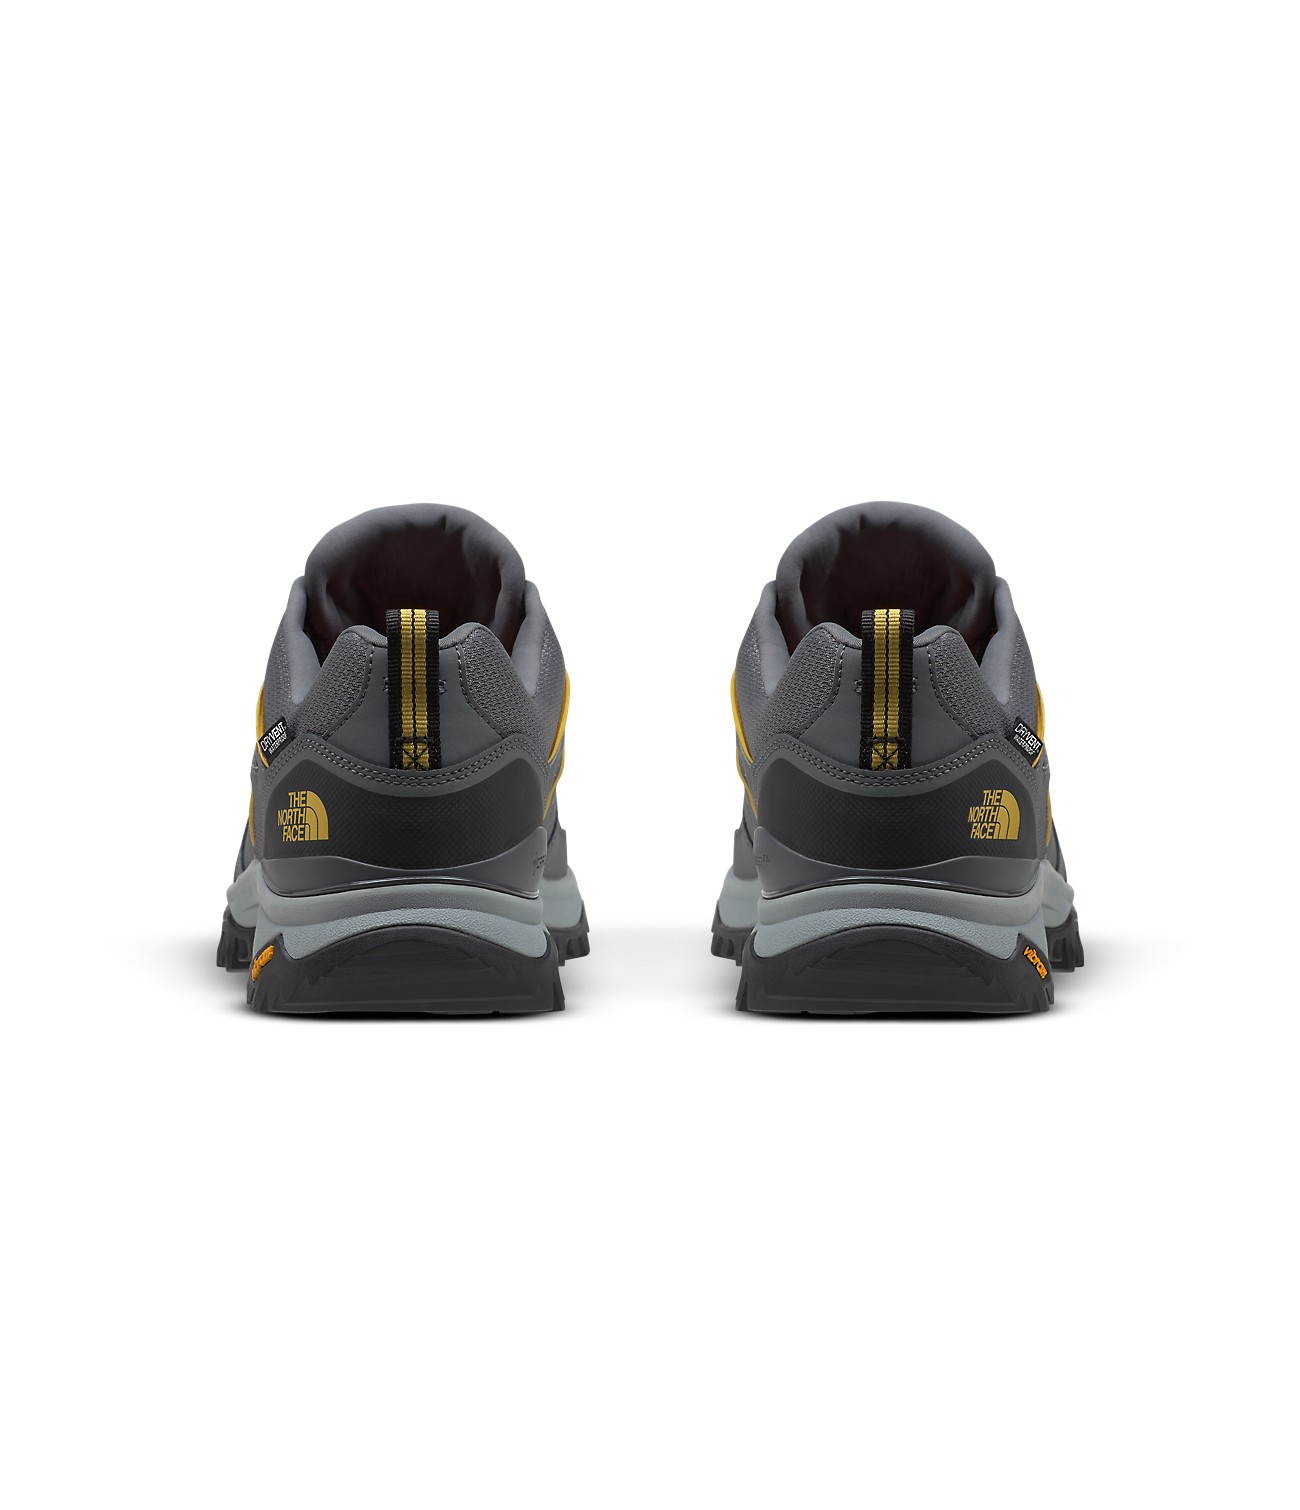 Men’s Hedgehog Fastpack II WP Shoes | The North Face